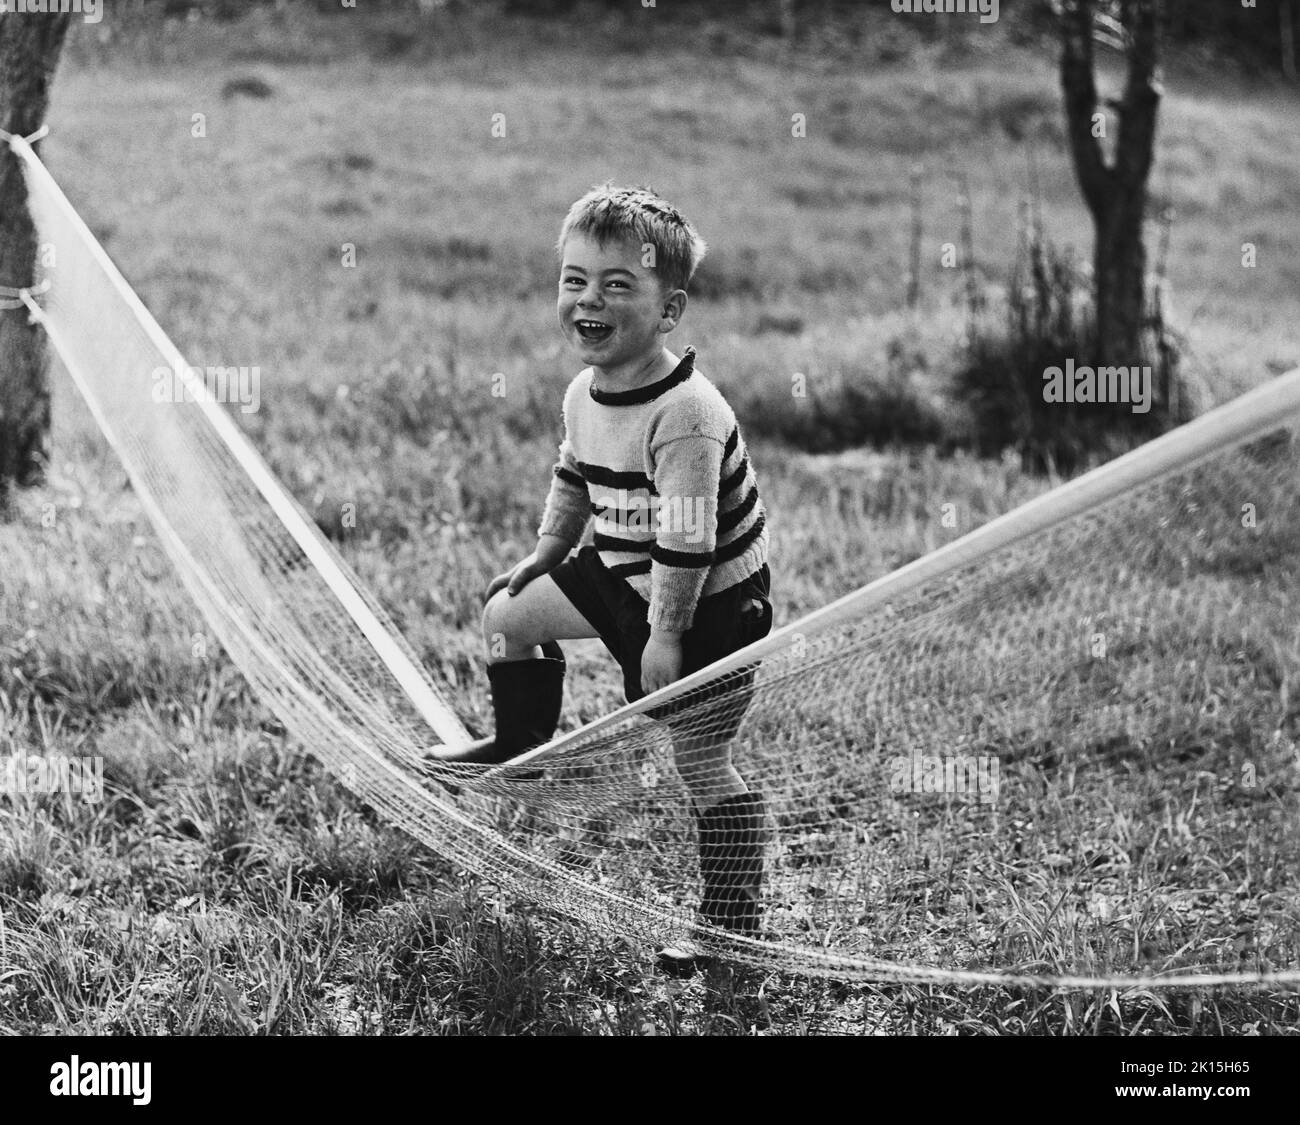 La fotografía está subtitulada: '¿Qué esperabas, Forest Hills?'. Un joven riendo pisotea una red de tenis. Foto de stock